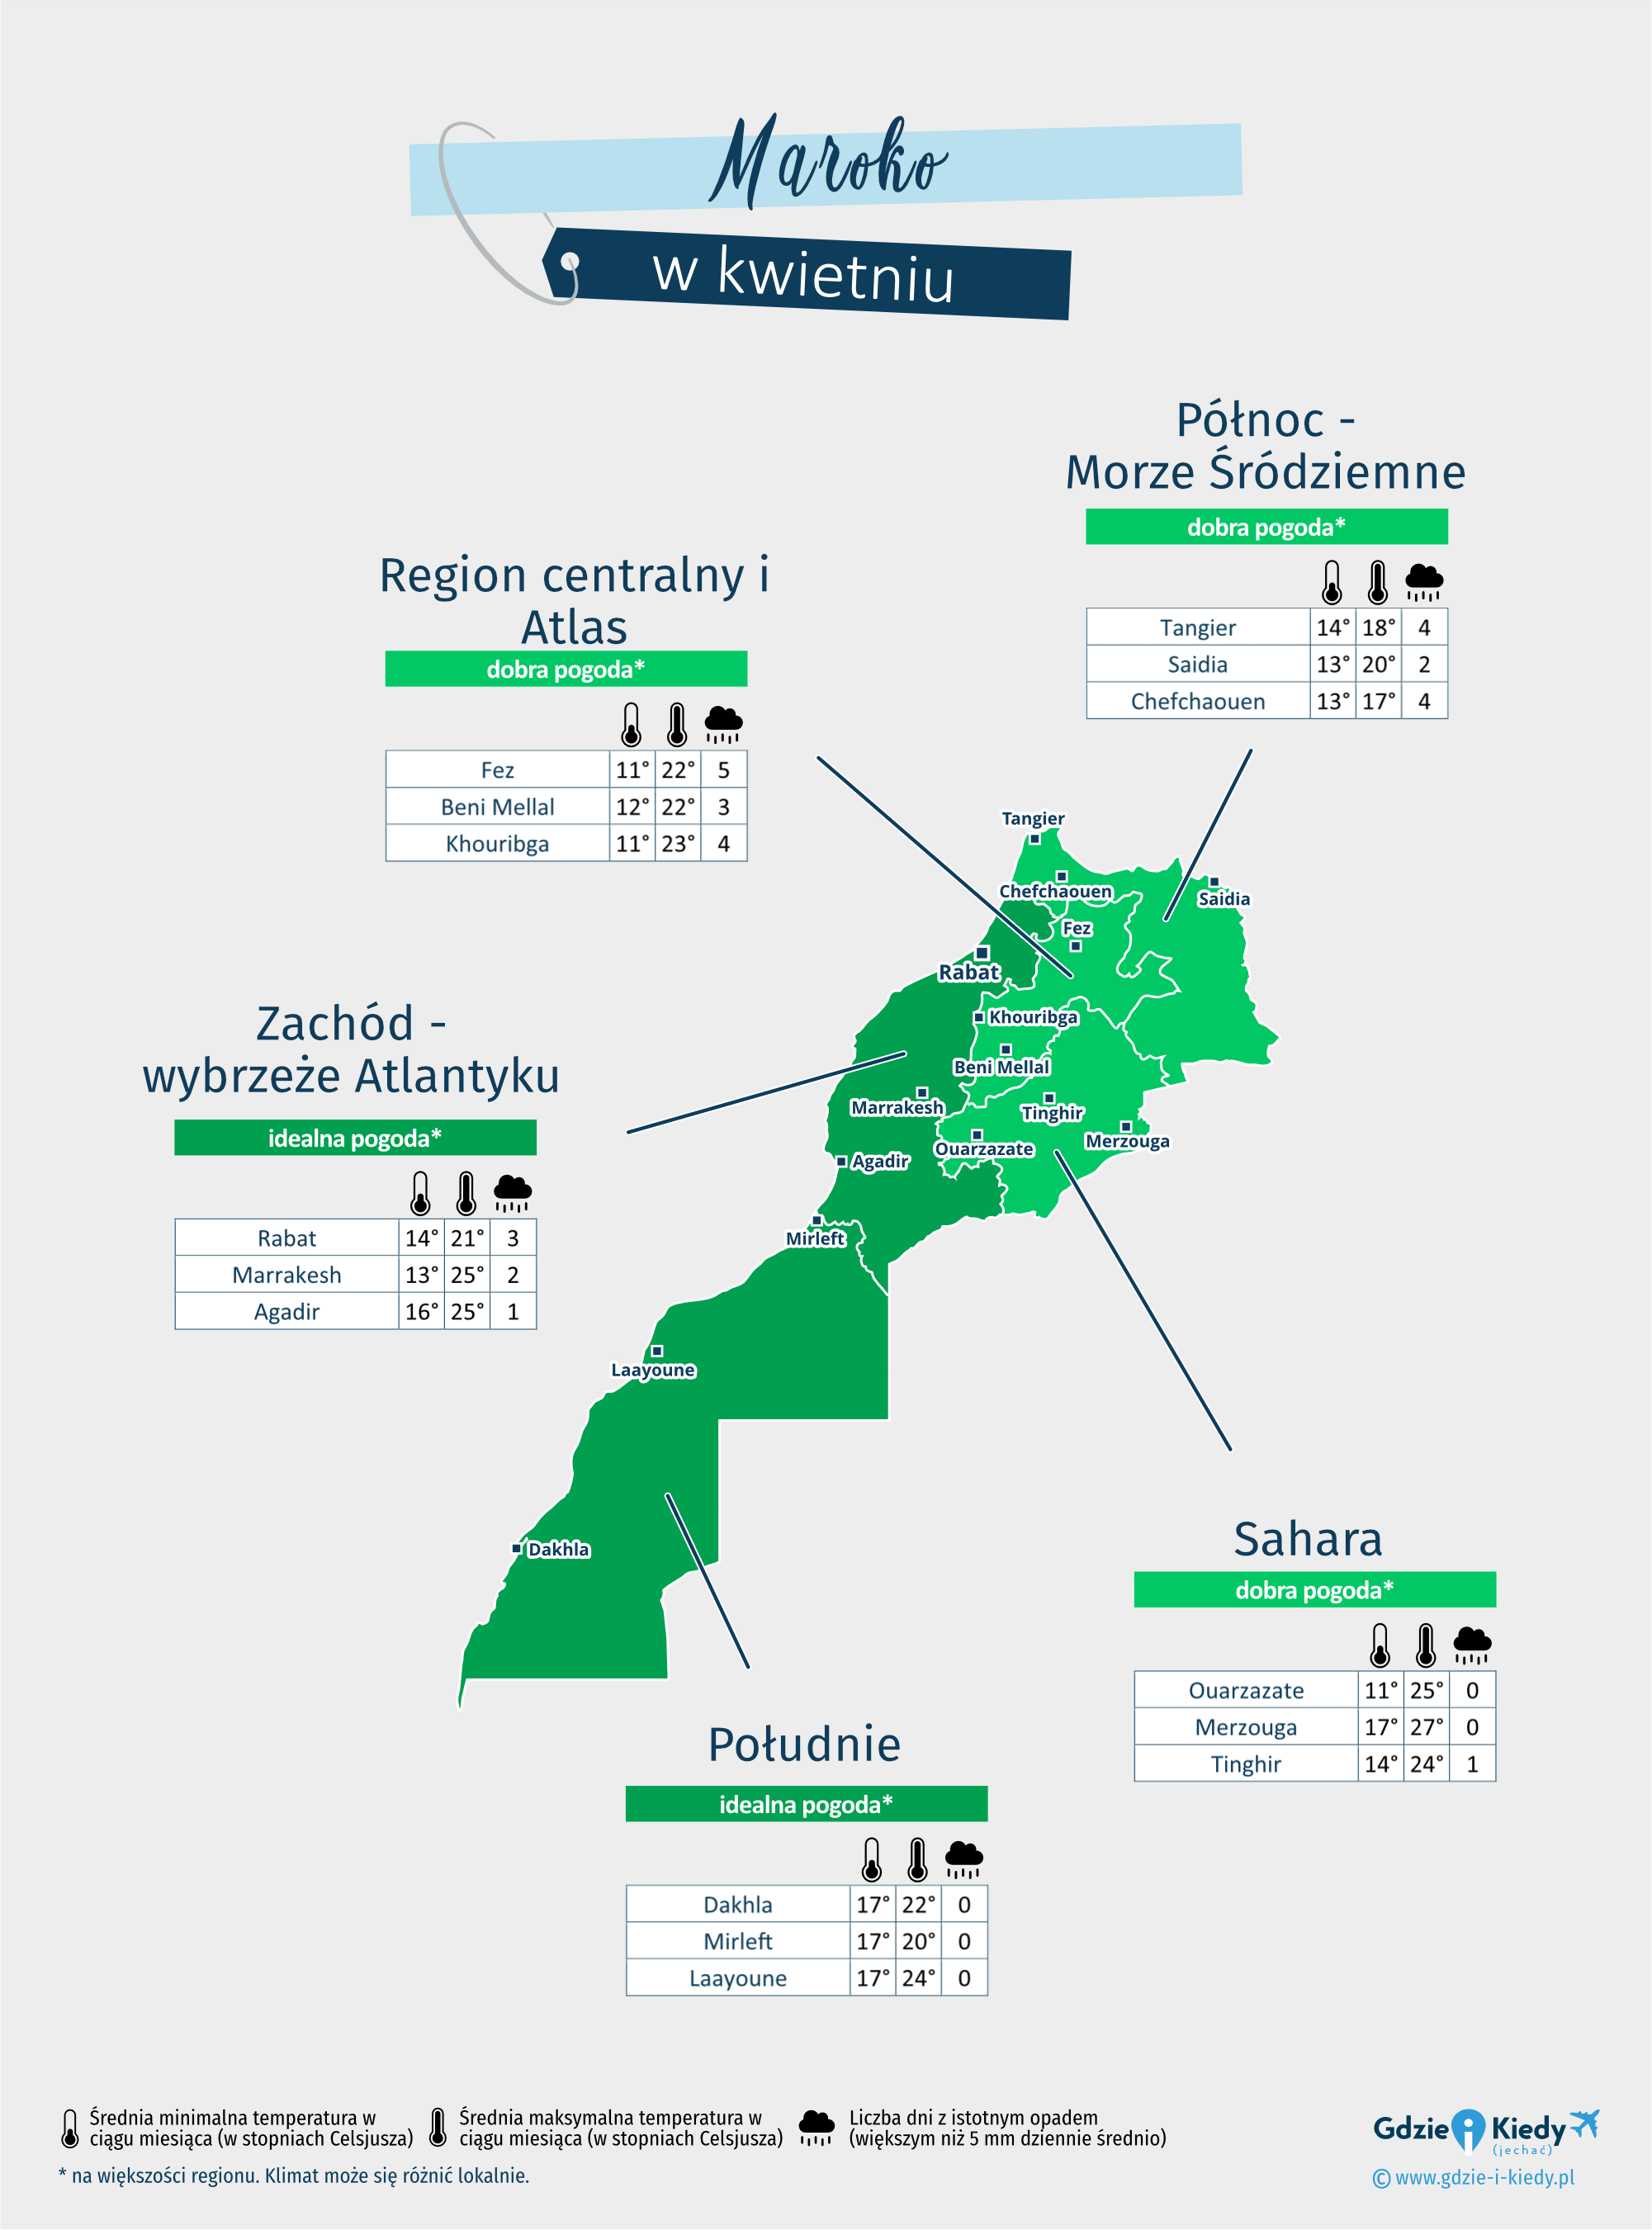 Maroko: mapa pogody w kwietniu w różnych regionach